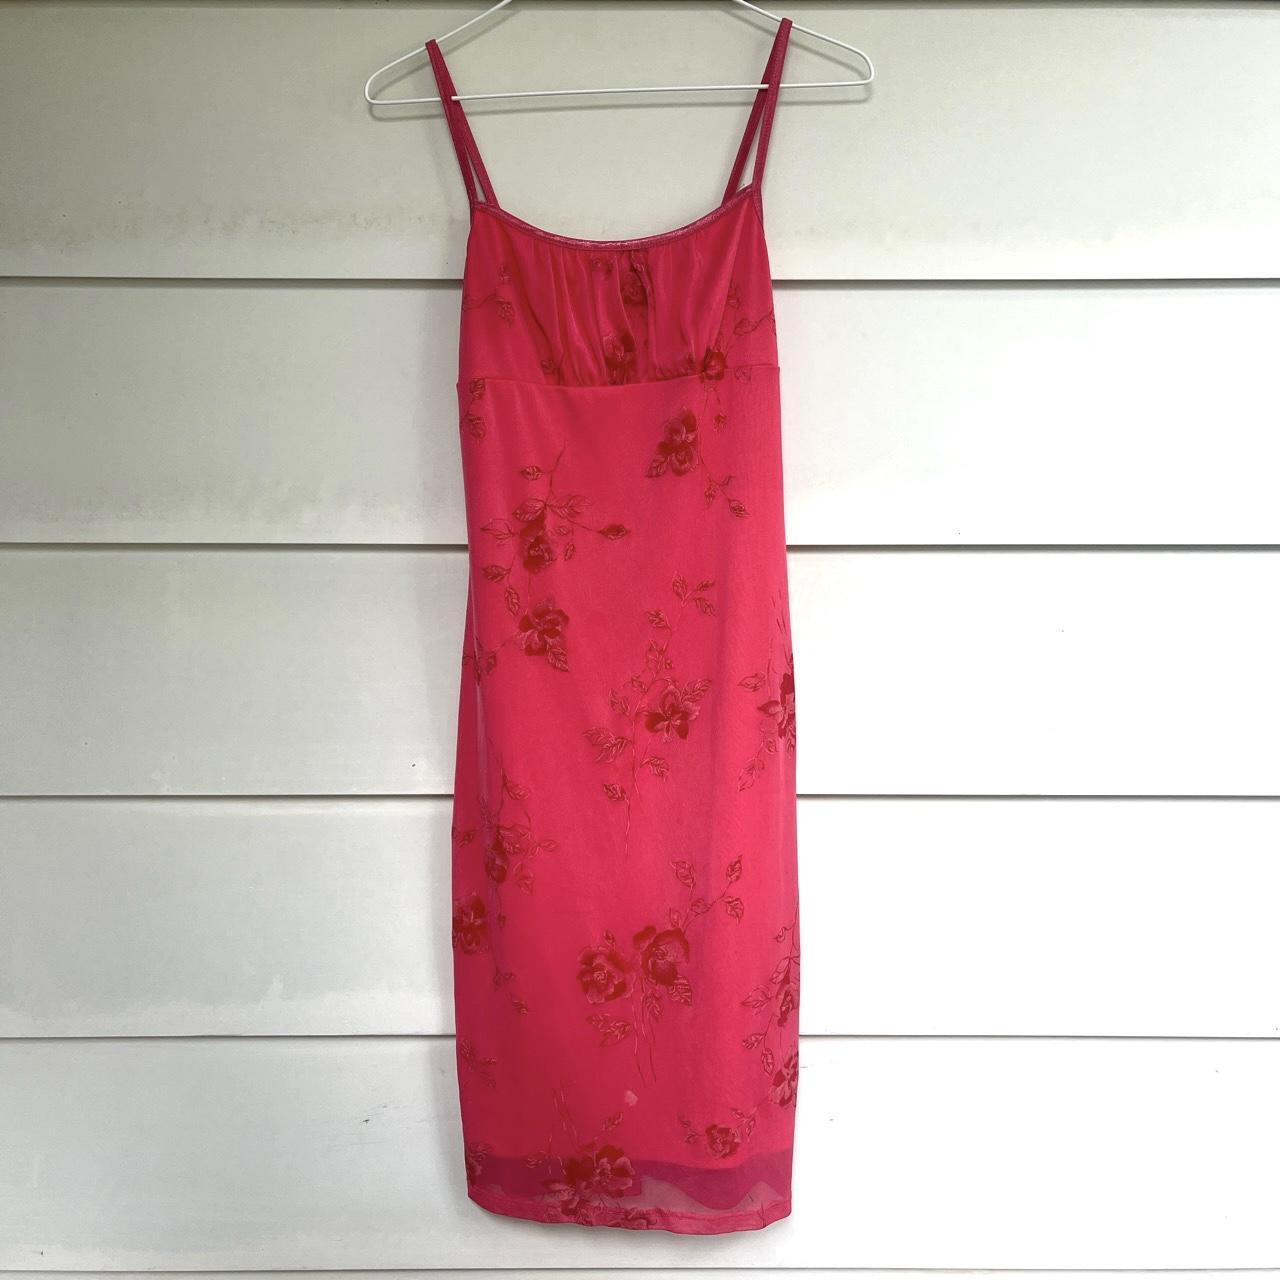 Hot pink floral dress - Depop